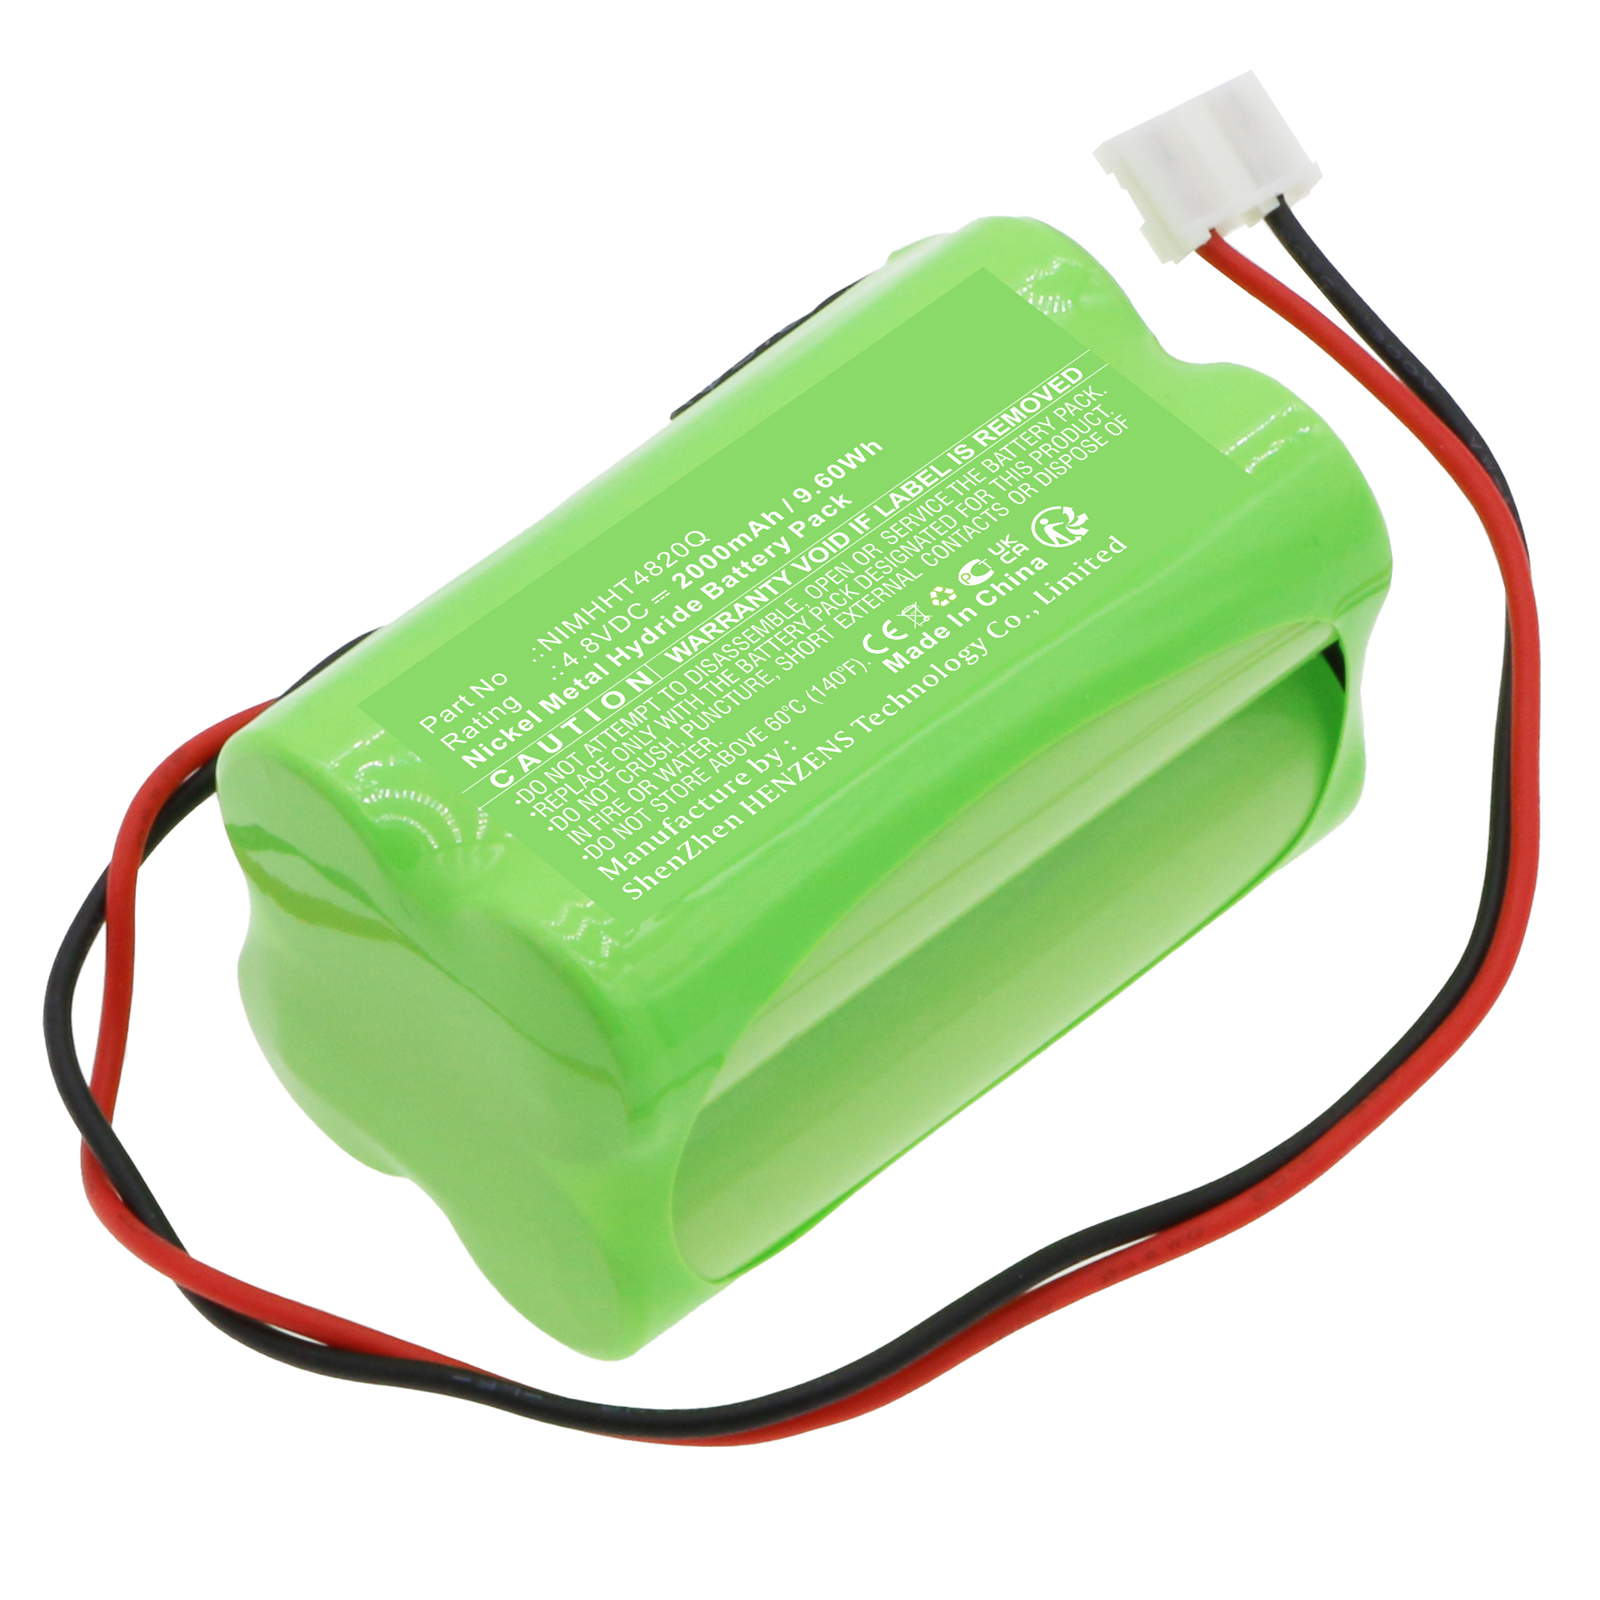 Batteries for ABMEmergency Lighting